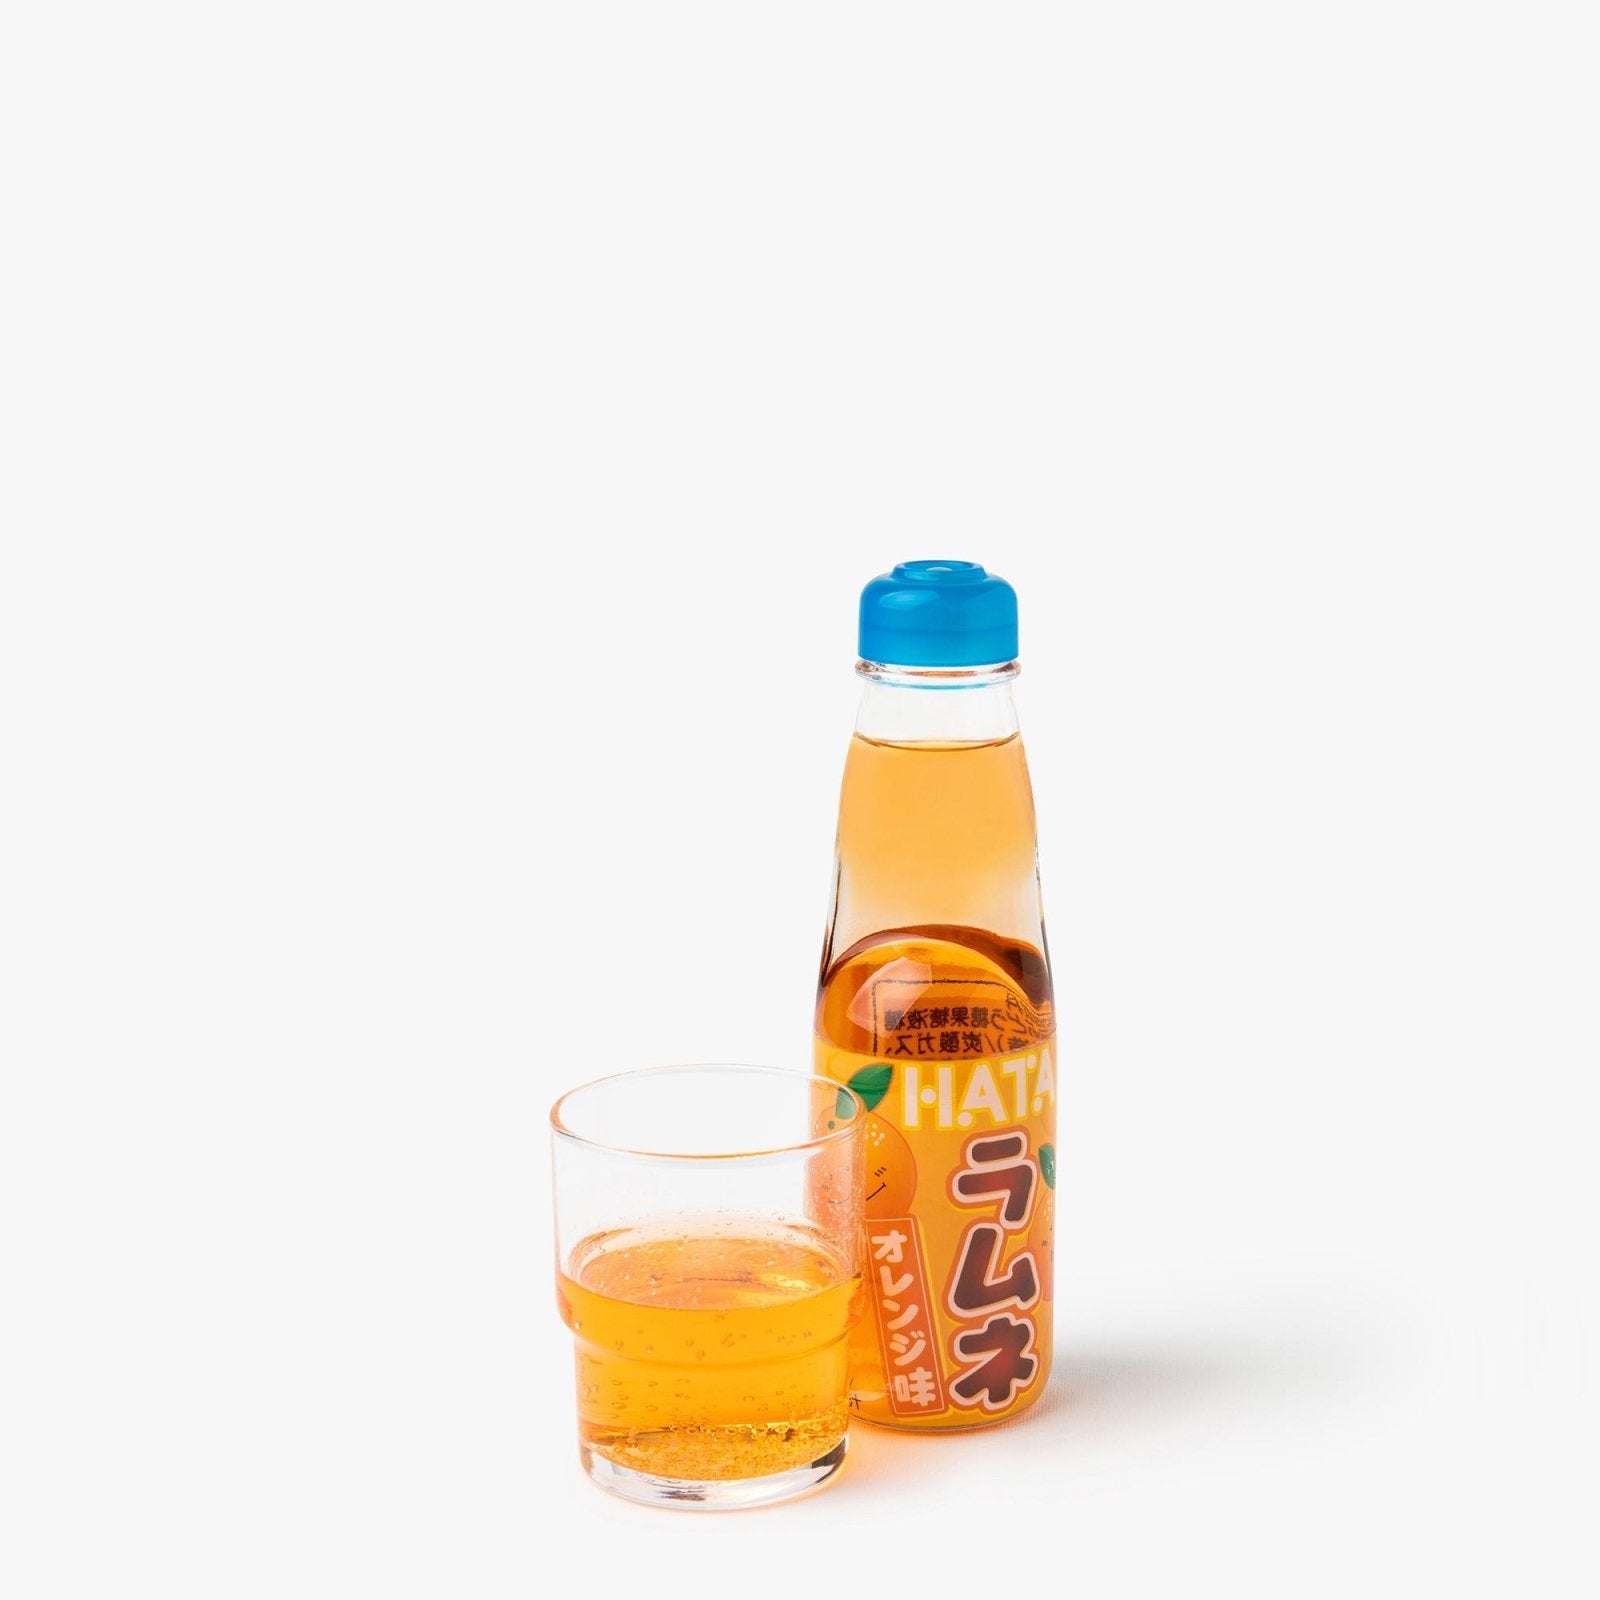 Limonade Hata ramune orange - 200ml - Hata kosen - iRASSHAi